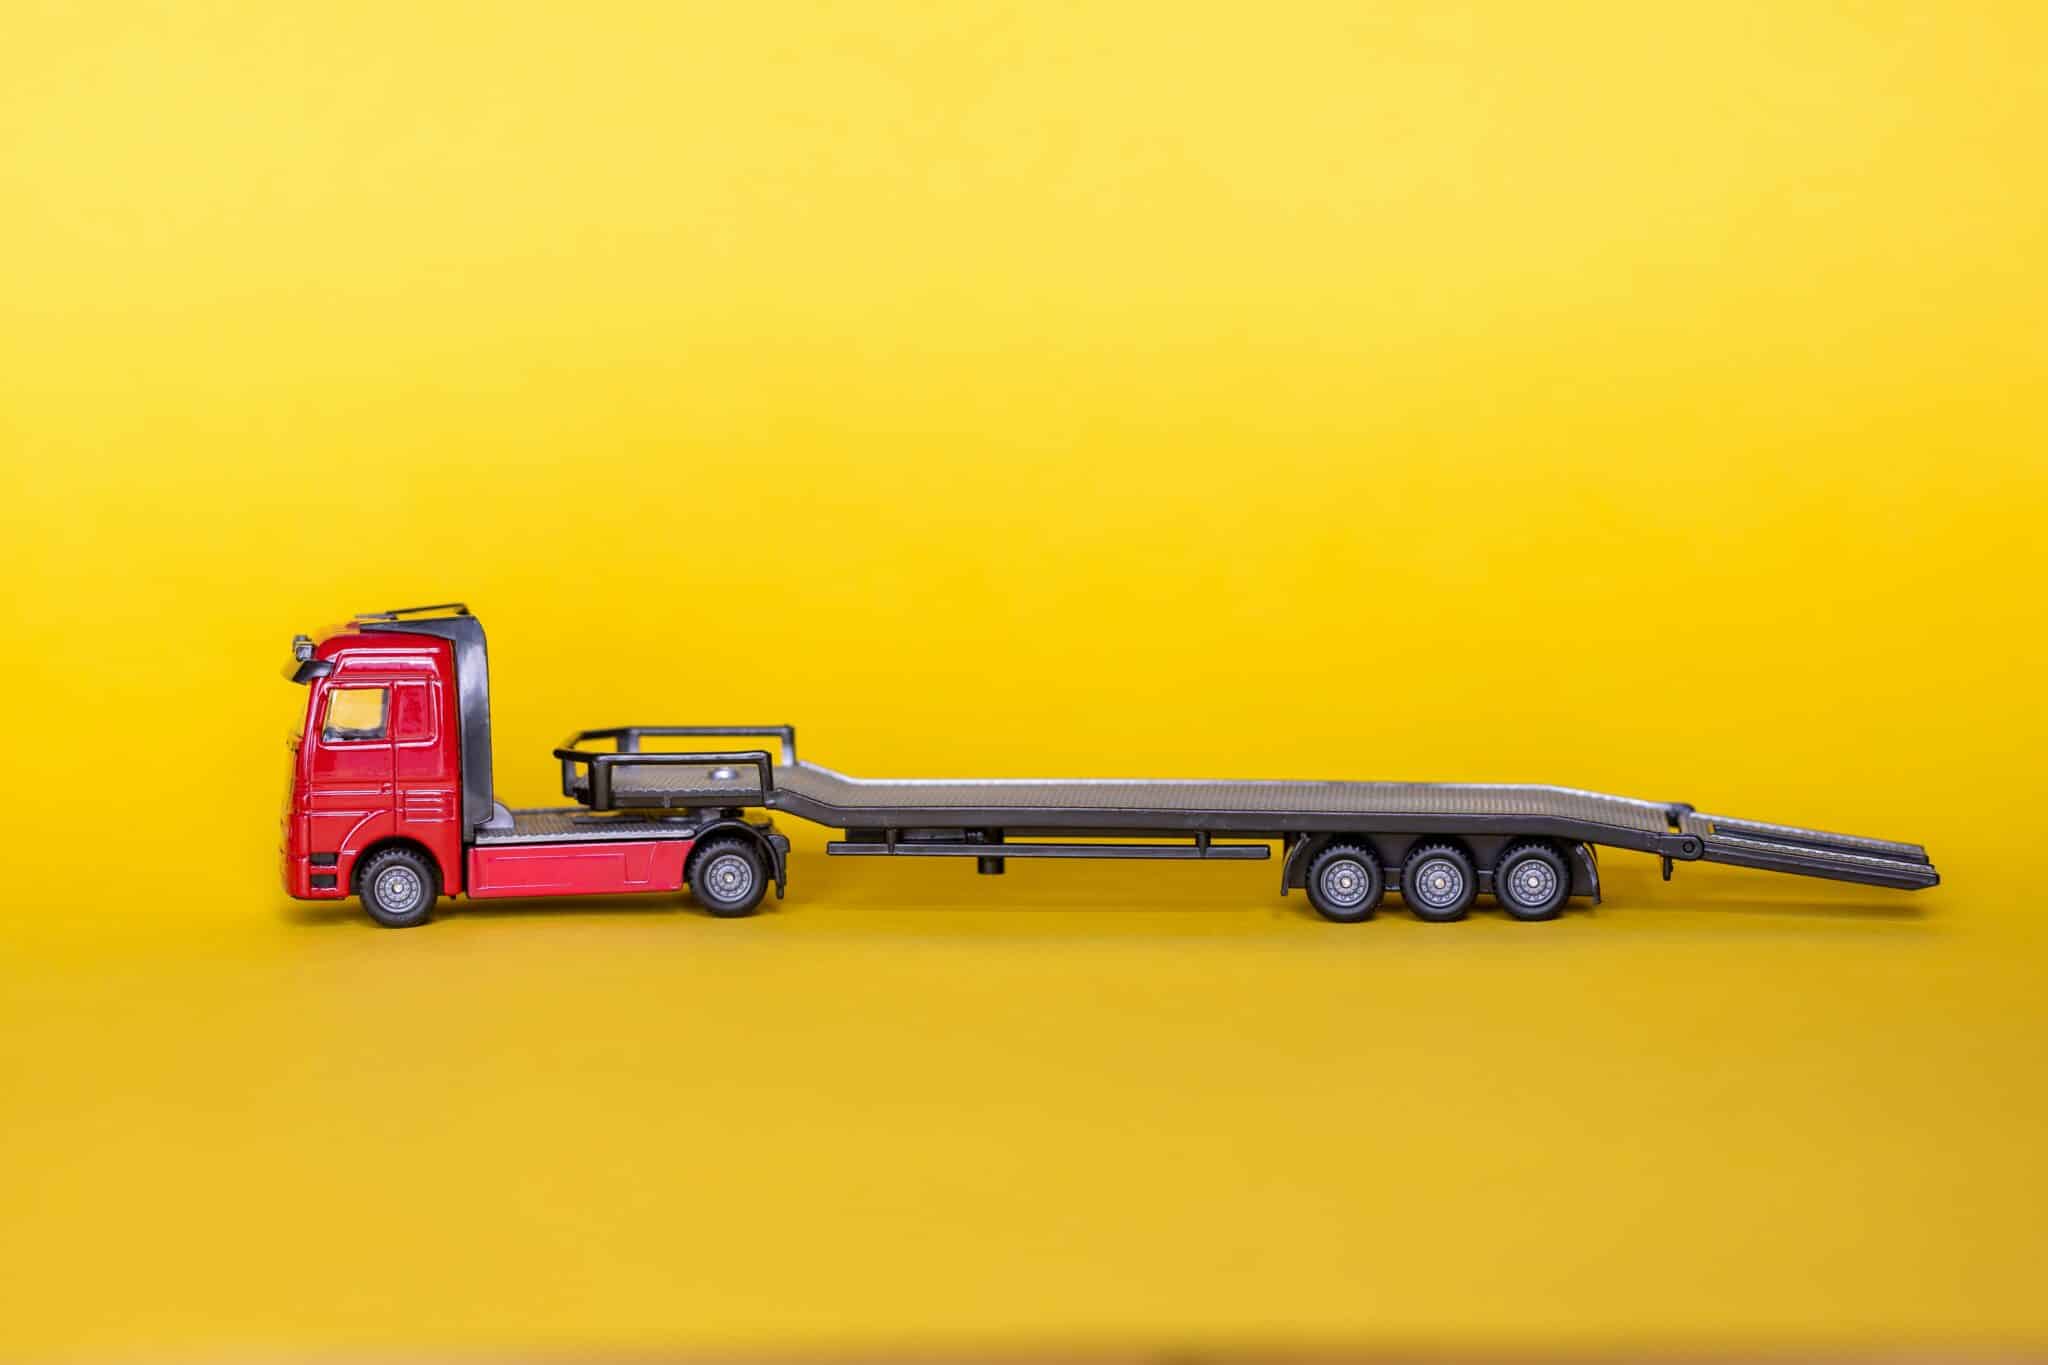 location de camions à des fins professionnelles ou personnelles : choisissez parmi une large gamme de véhicules de location pour répondre à vos besoins de transport chez notre service de location de camions.